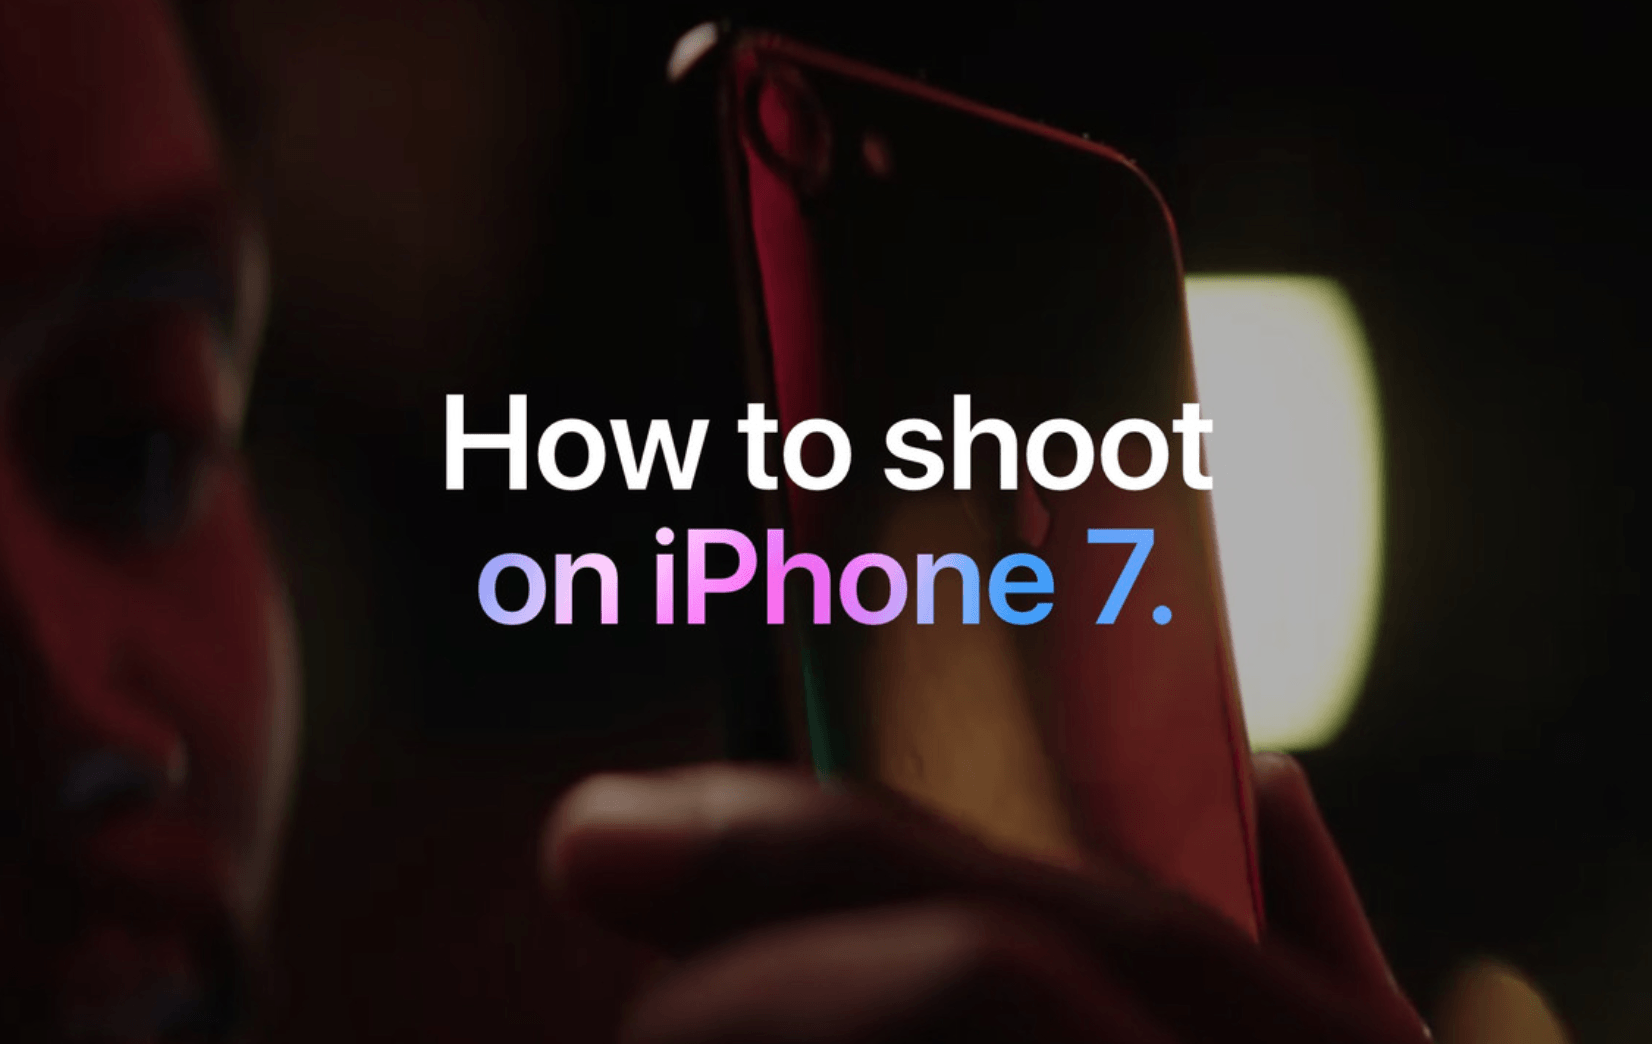 มาเอง Apple ปล่อยวิดีโอซีรีส์แนะนำการถ่ายรูปบน iPhone 7 อย่างไรให้สวย!